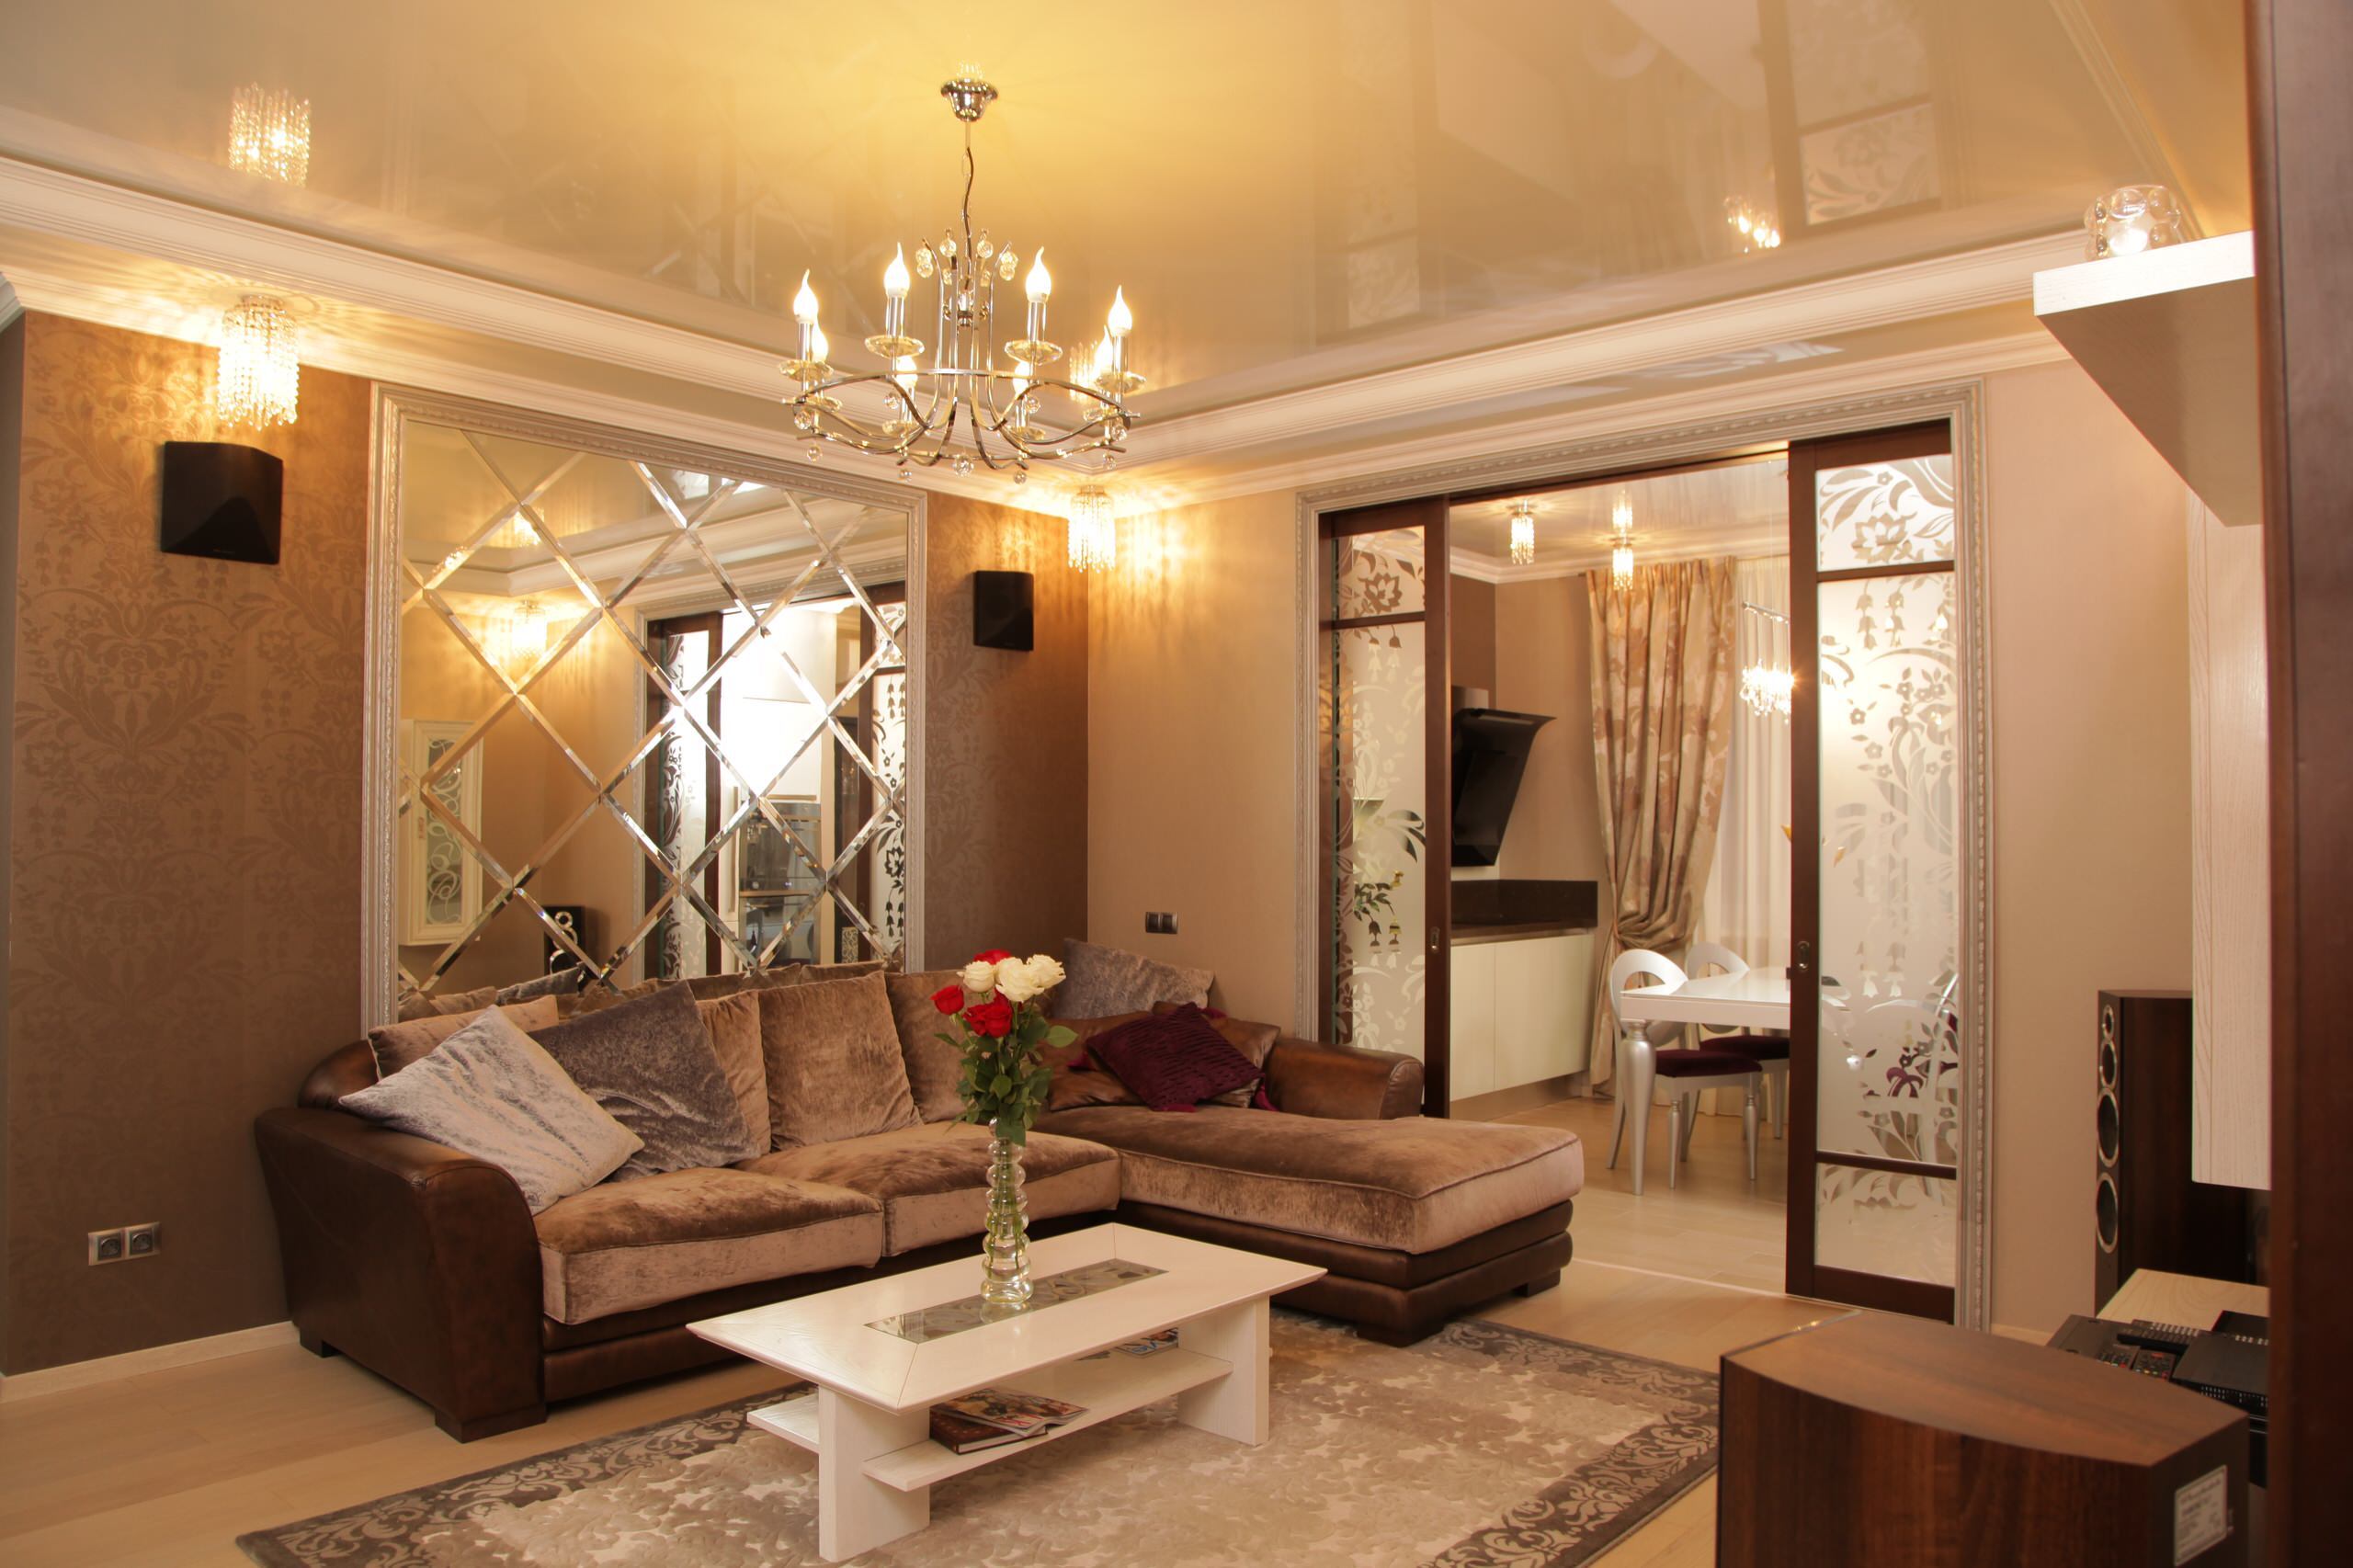 Интерьер гостиной с проходной, проемом и зеркалом на двери в современном стиле, в восточном стиле и готике